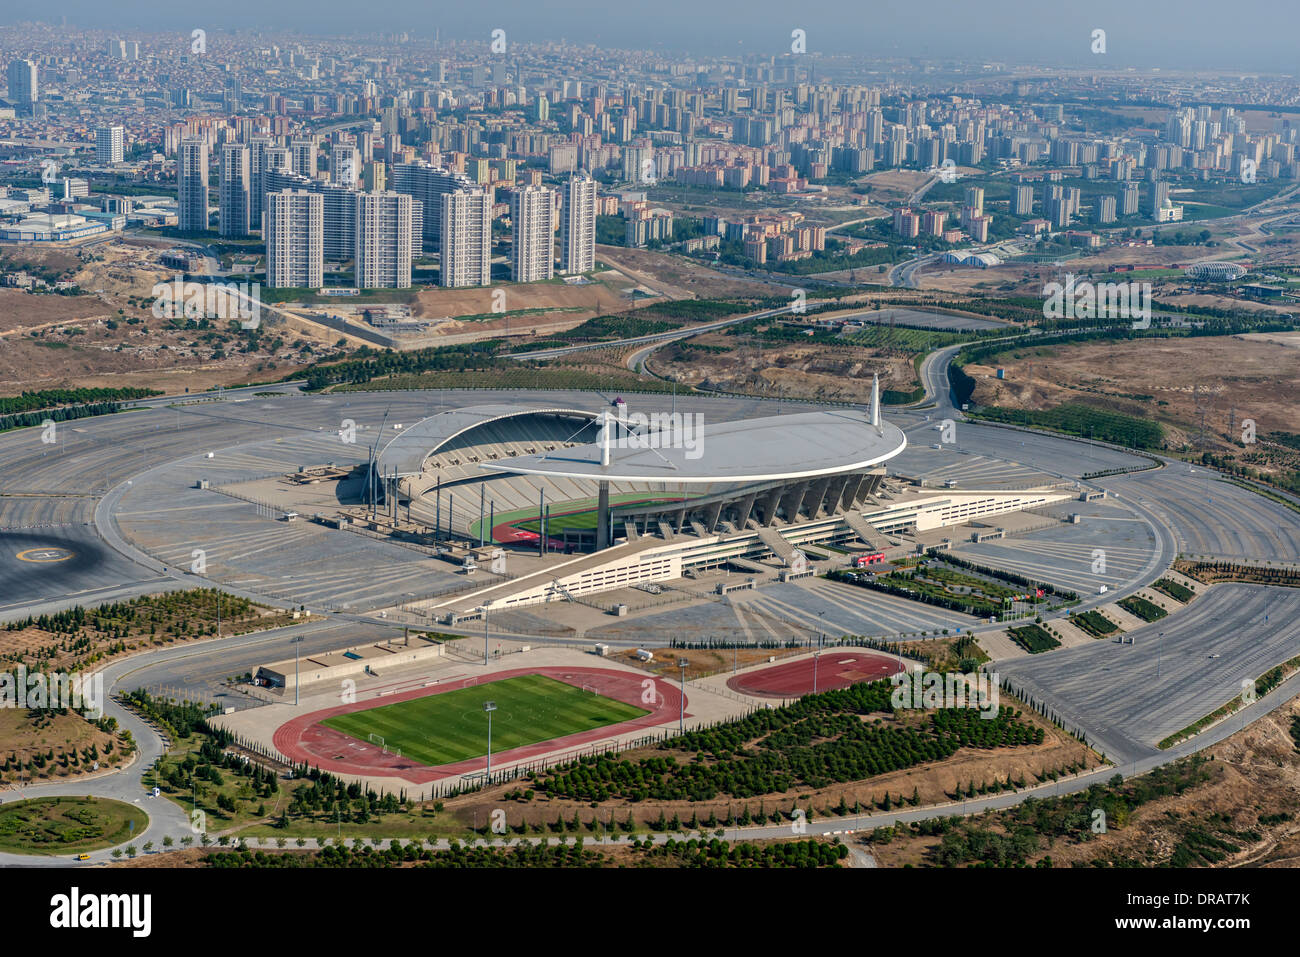 Ataturk Olympic Stadium located in Ikitelli. The stadium ...